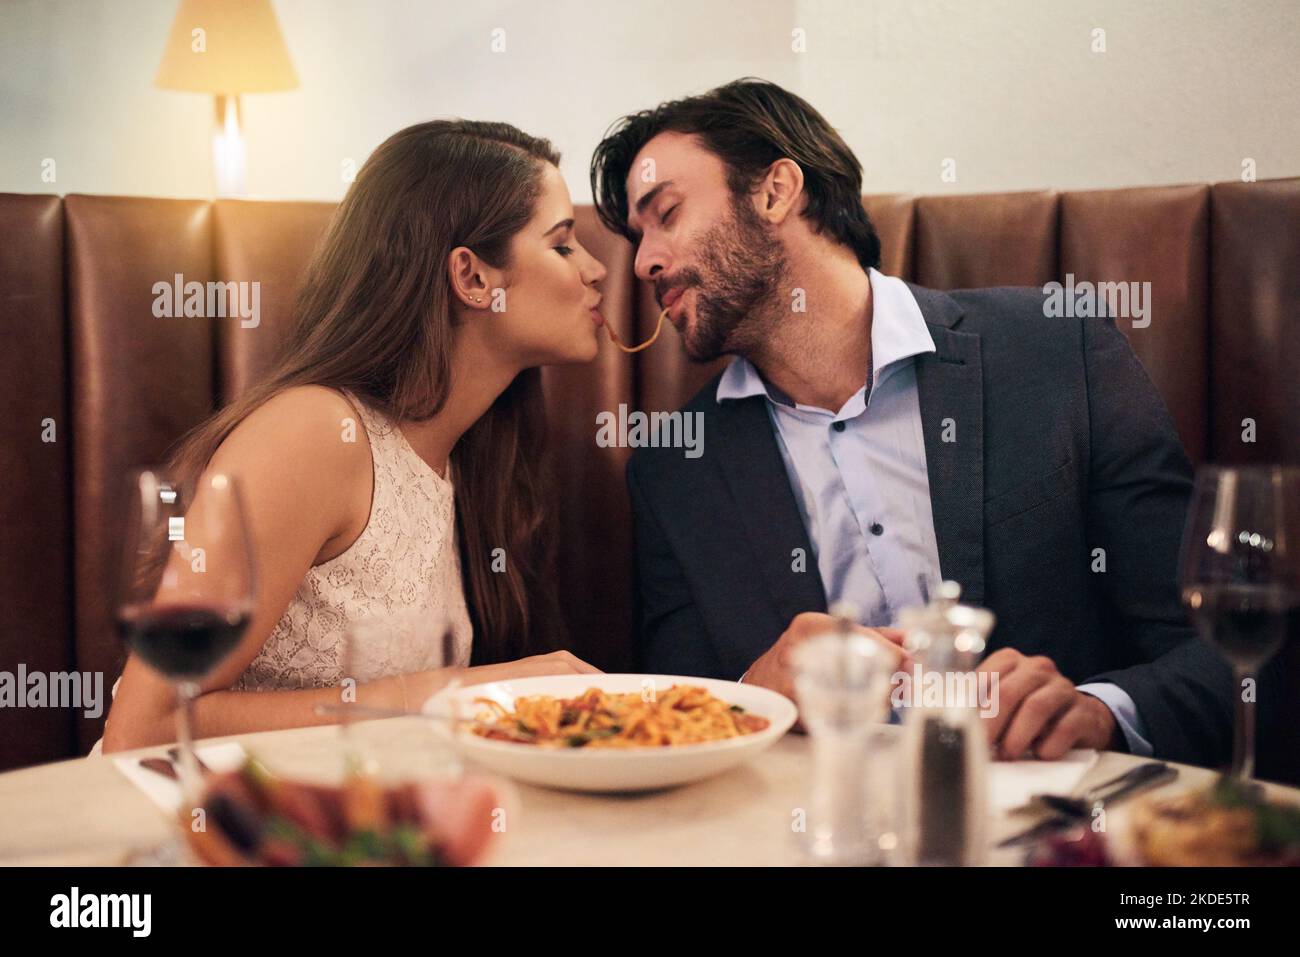 In der Mitte wird es köstlich. Ein junges Paar teilt sich Spaghetti während eines romantischen Abendessens in einem Restaurant. Stockfoto